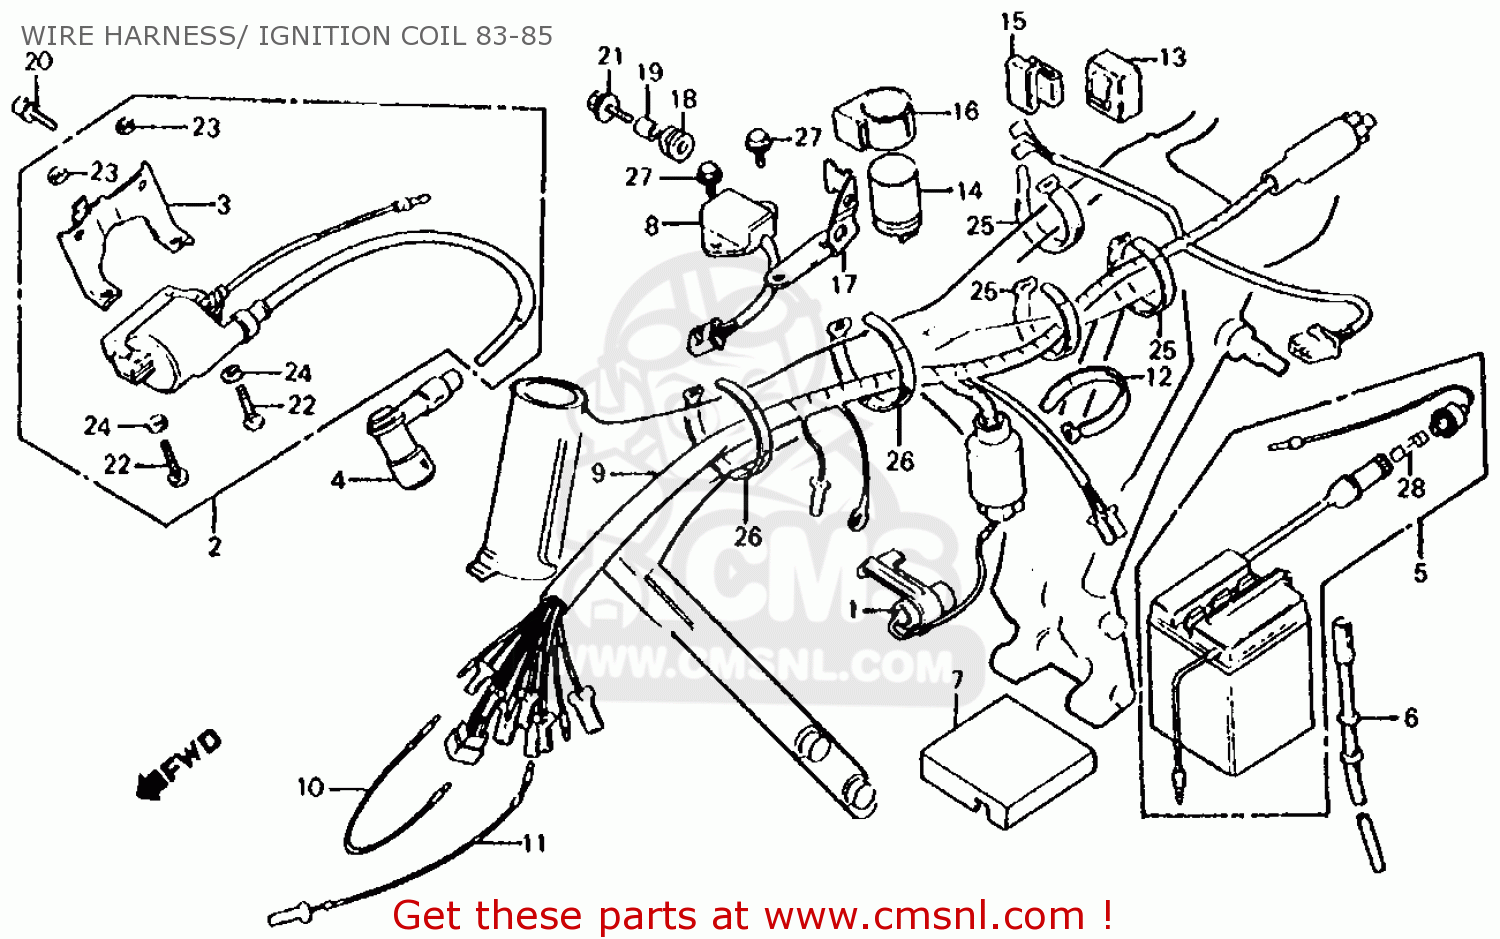 Honda 1984 xr80 factory service manual